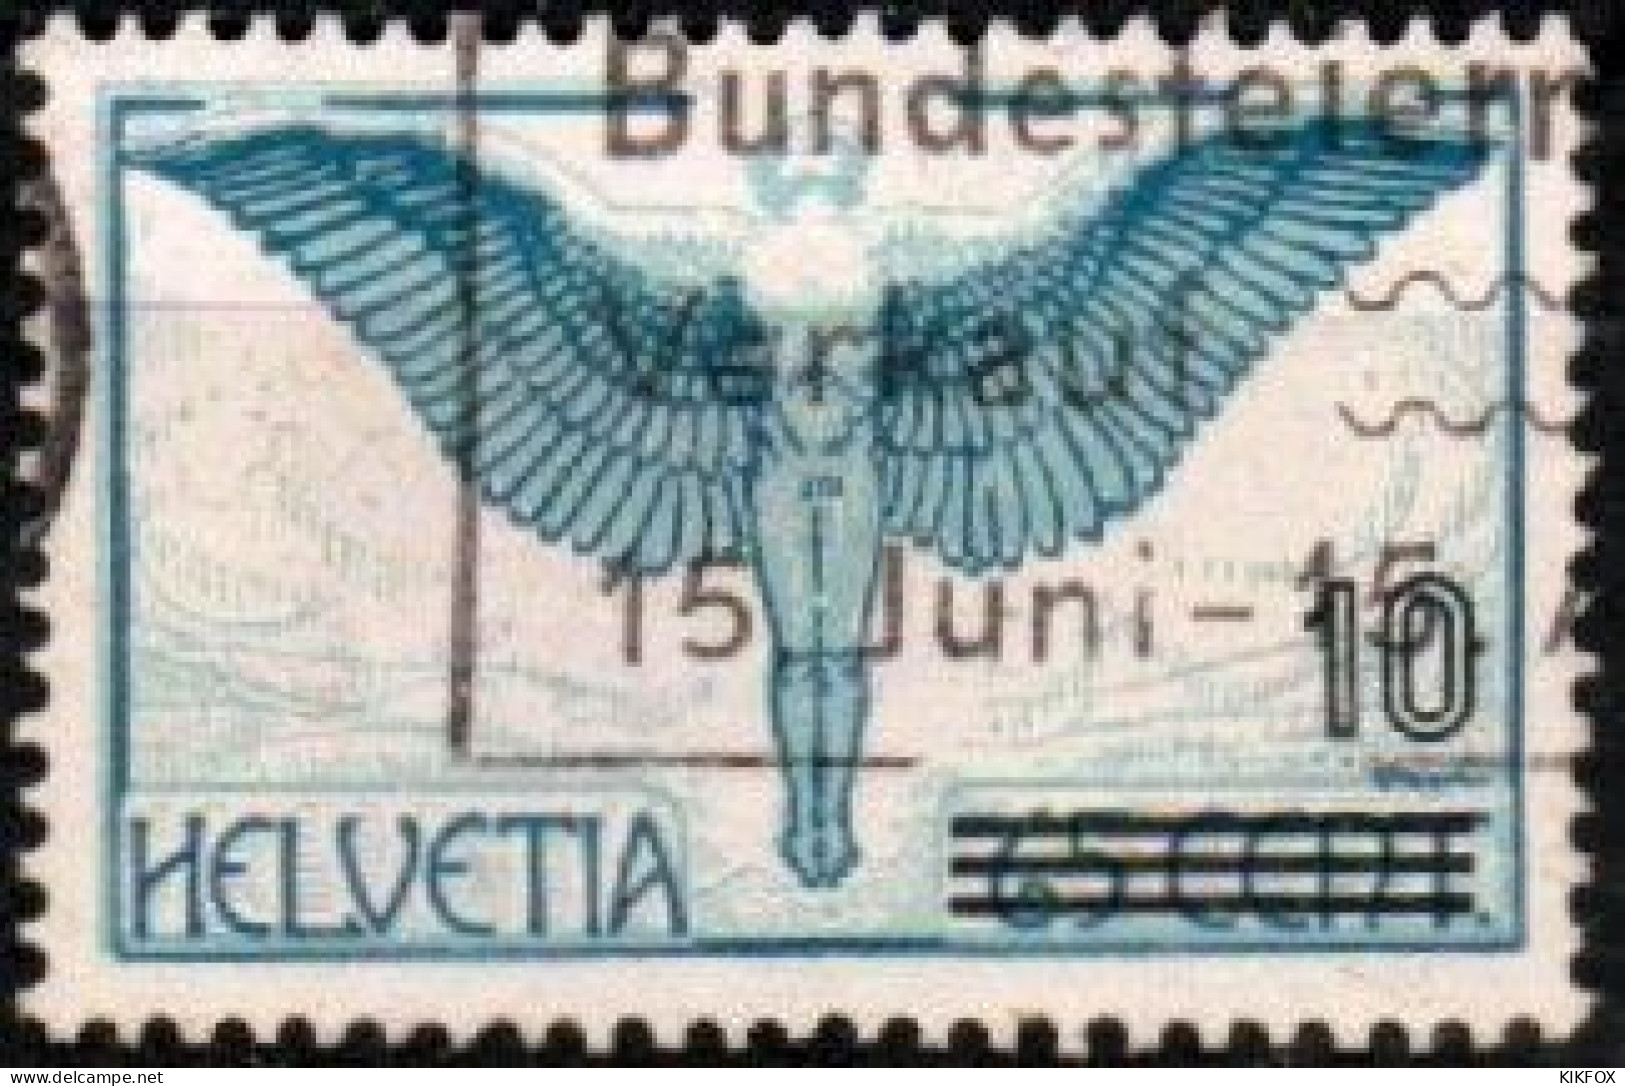 SUISSE ,SCHWEIZ,1938, MI 320, YV 25,  FLUGPOSTAUSGABE 189 MIT ÜBERDRUCK, GESTEMPELT, OBLITERE - Used Stamps